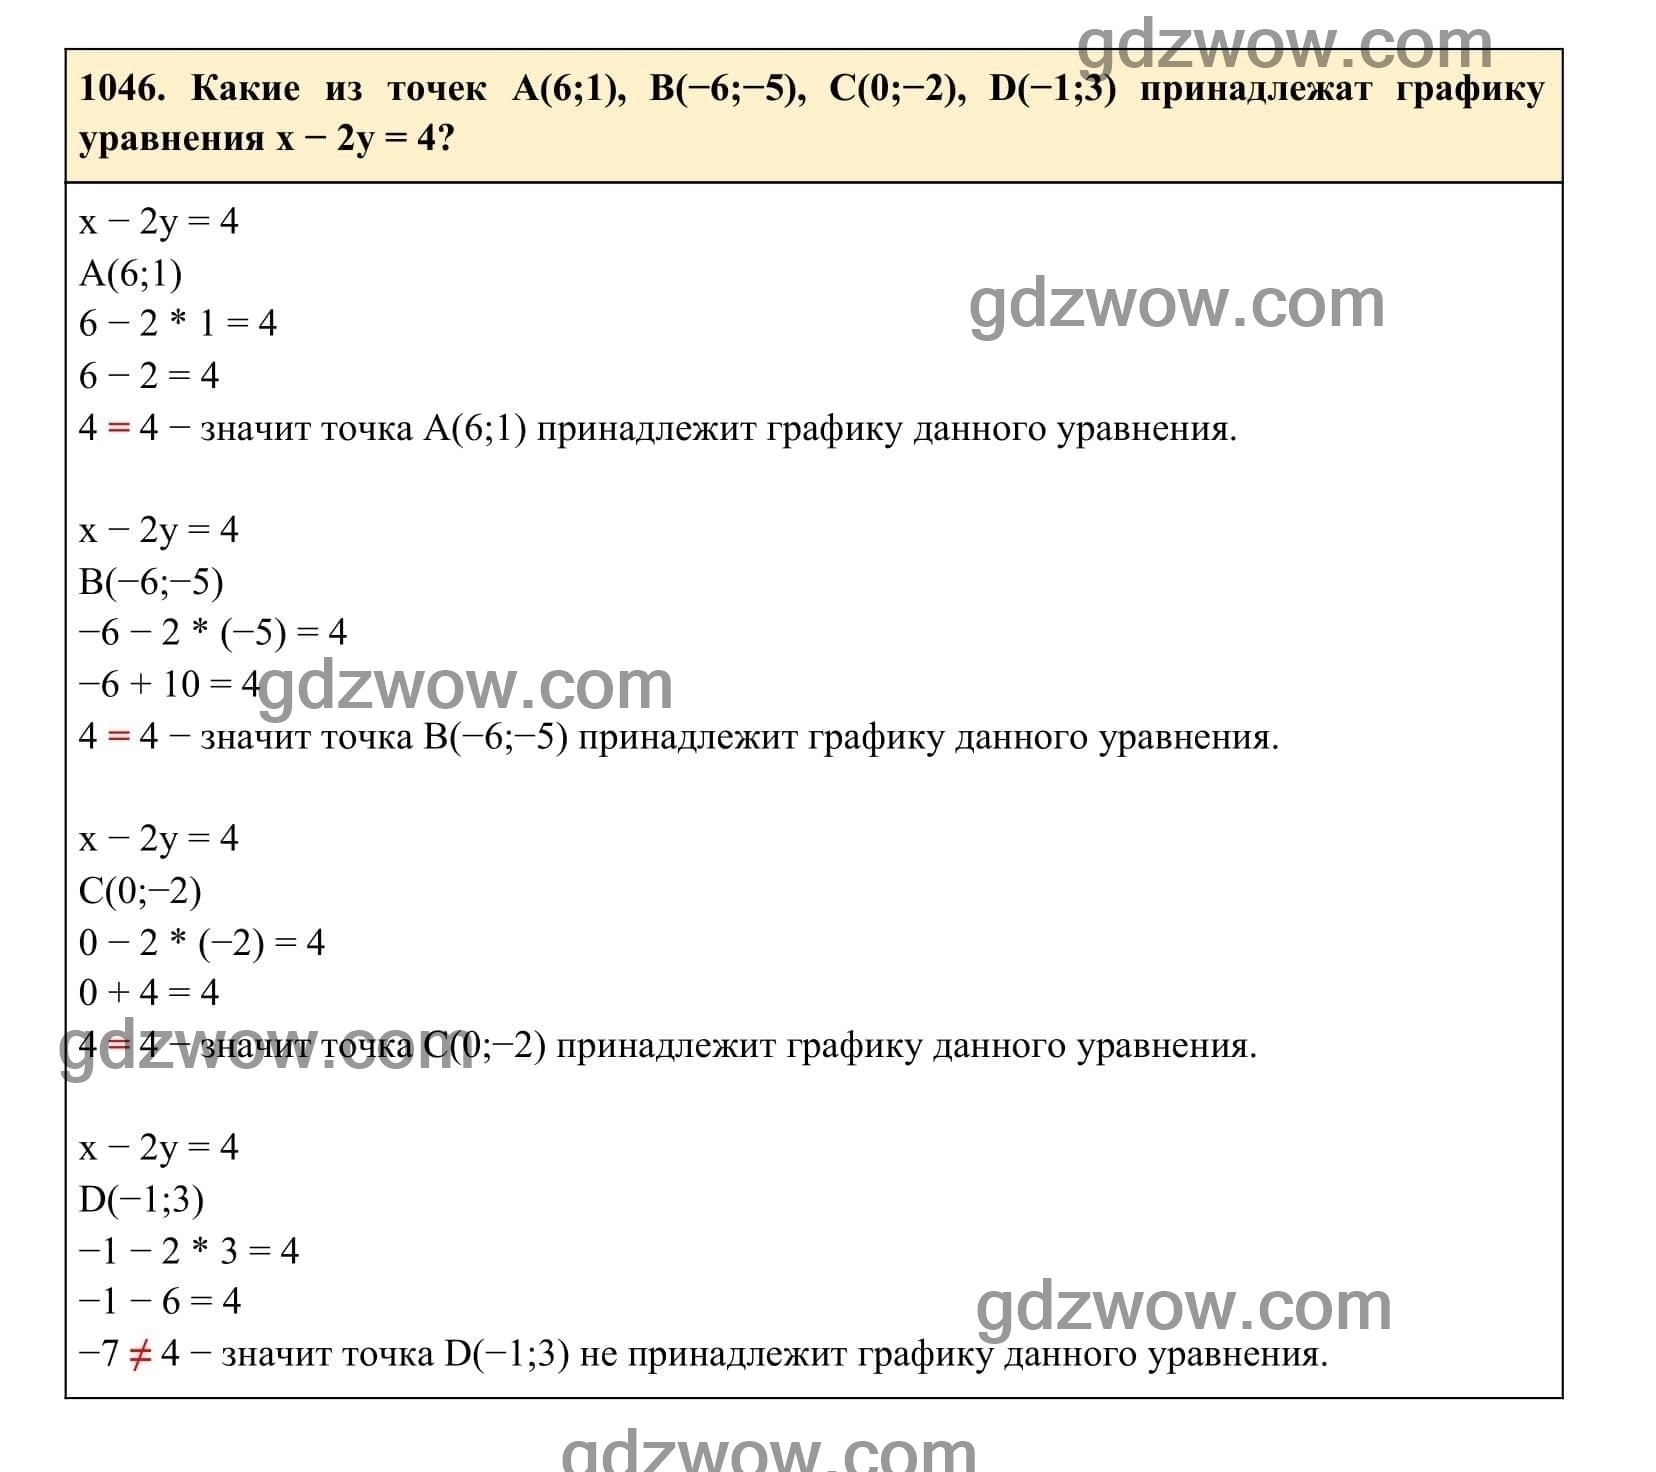 Упражнение 1046 - ГДЗ по Алгебре 7 класс Учебник Макарычев (решебник) - GDZwow